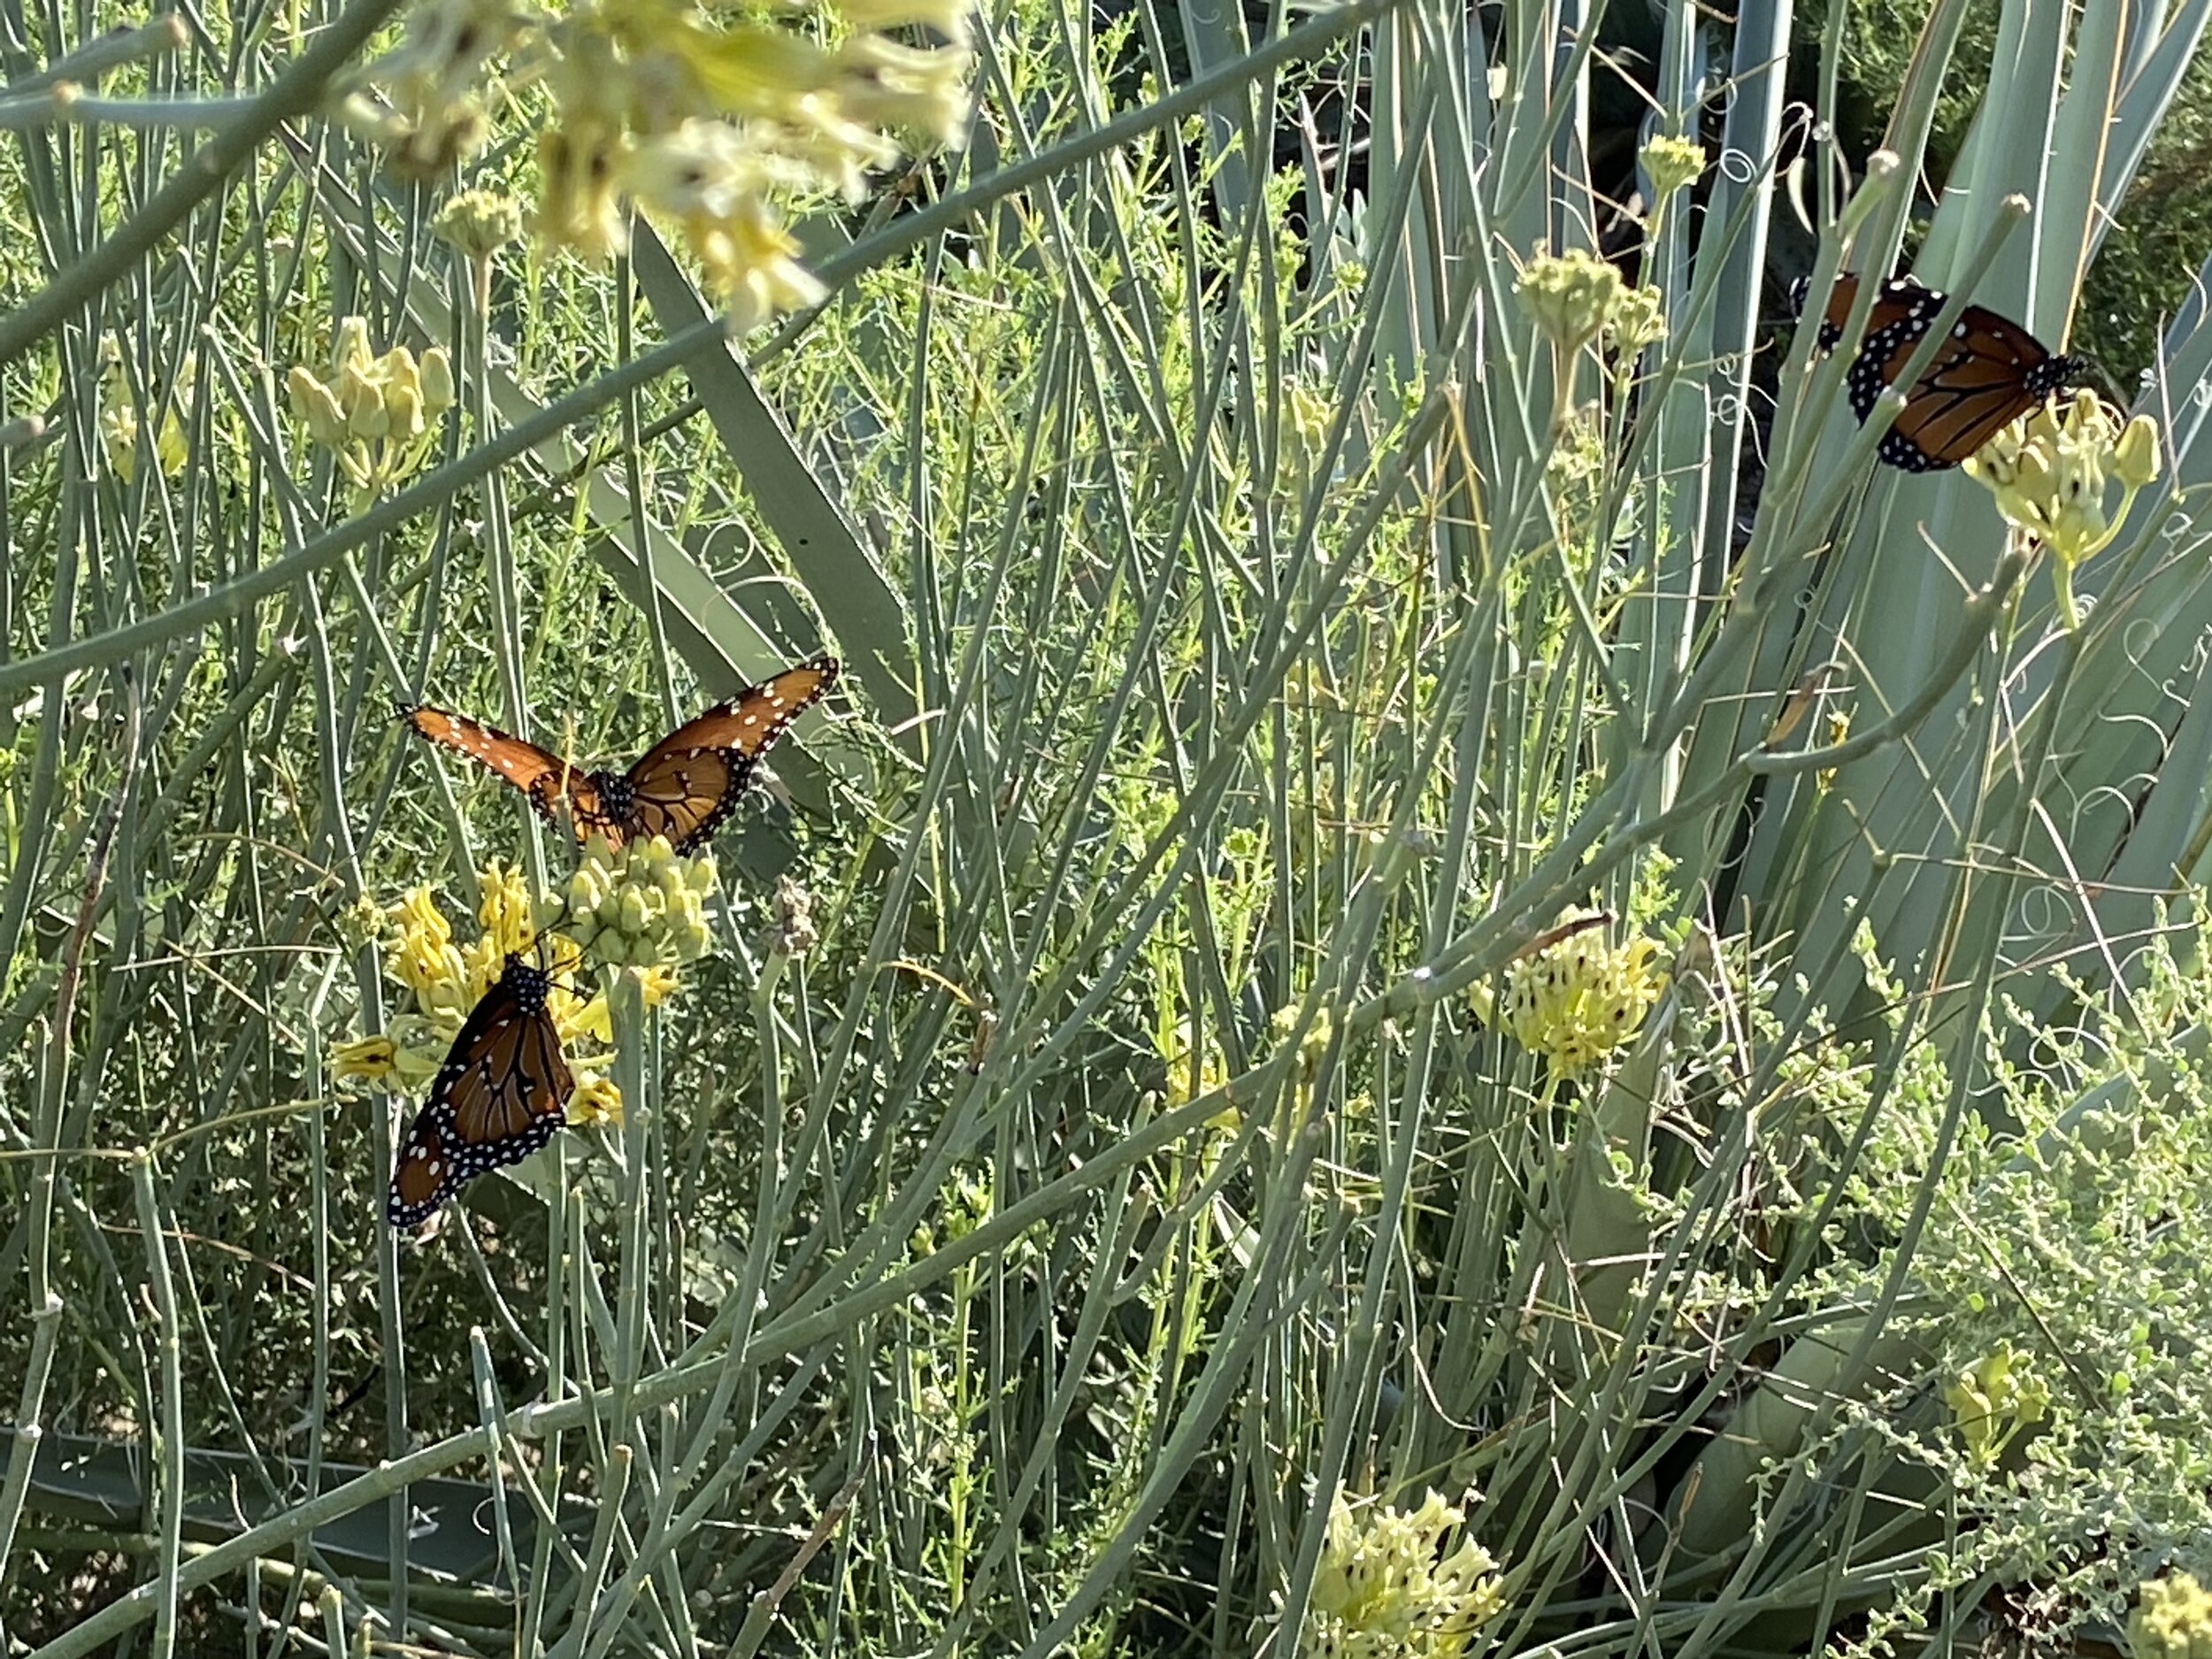 Queen butterfly on milkweed